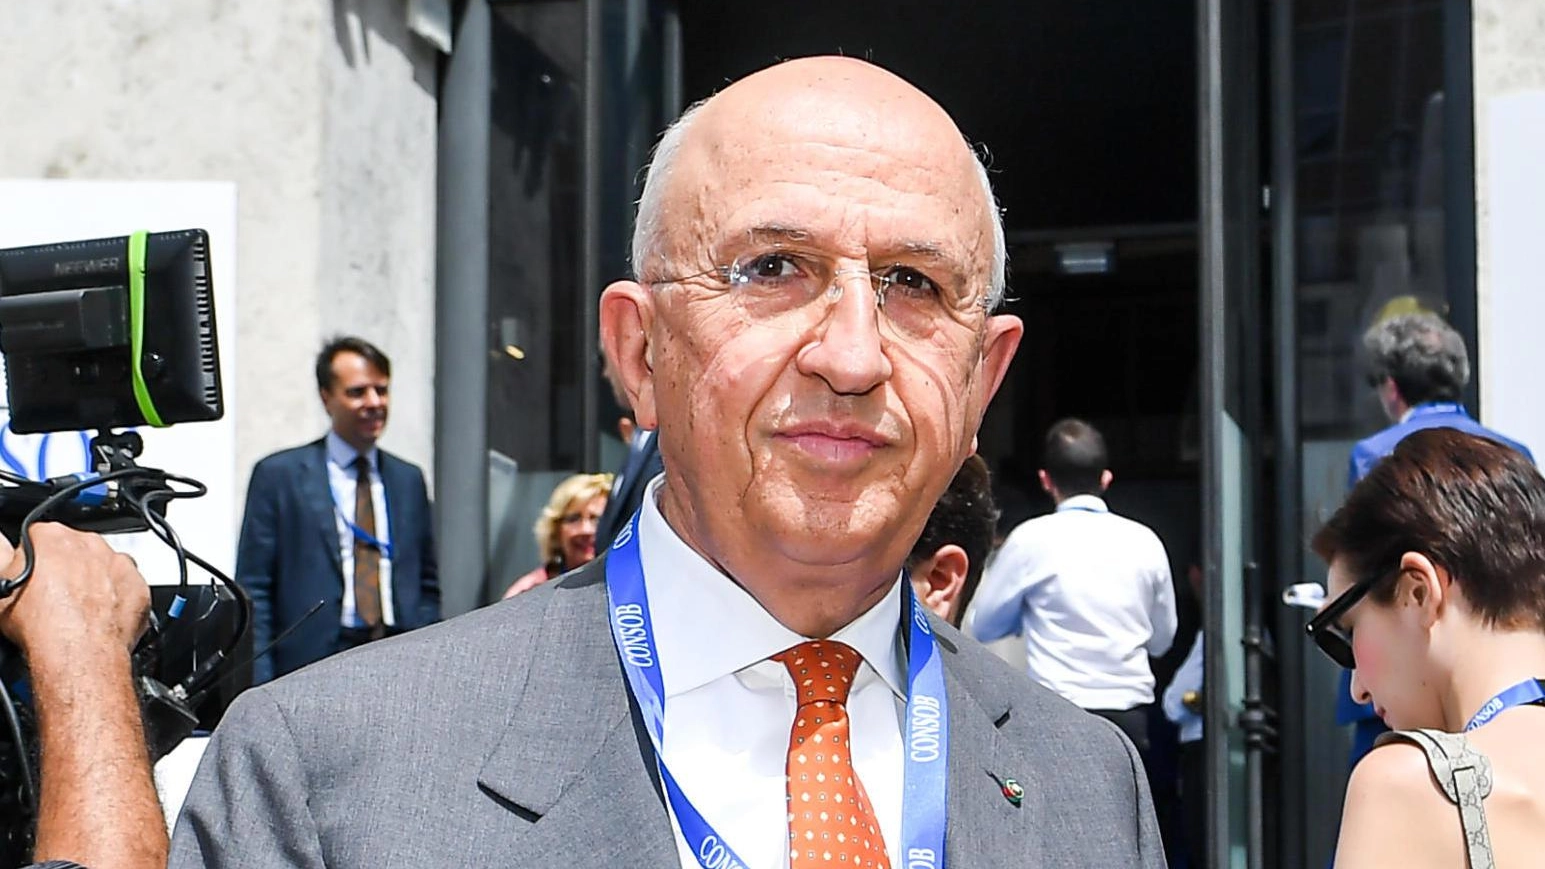 Antonio Patuelli, presidente dell’Associazione bancaria italiana